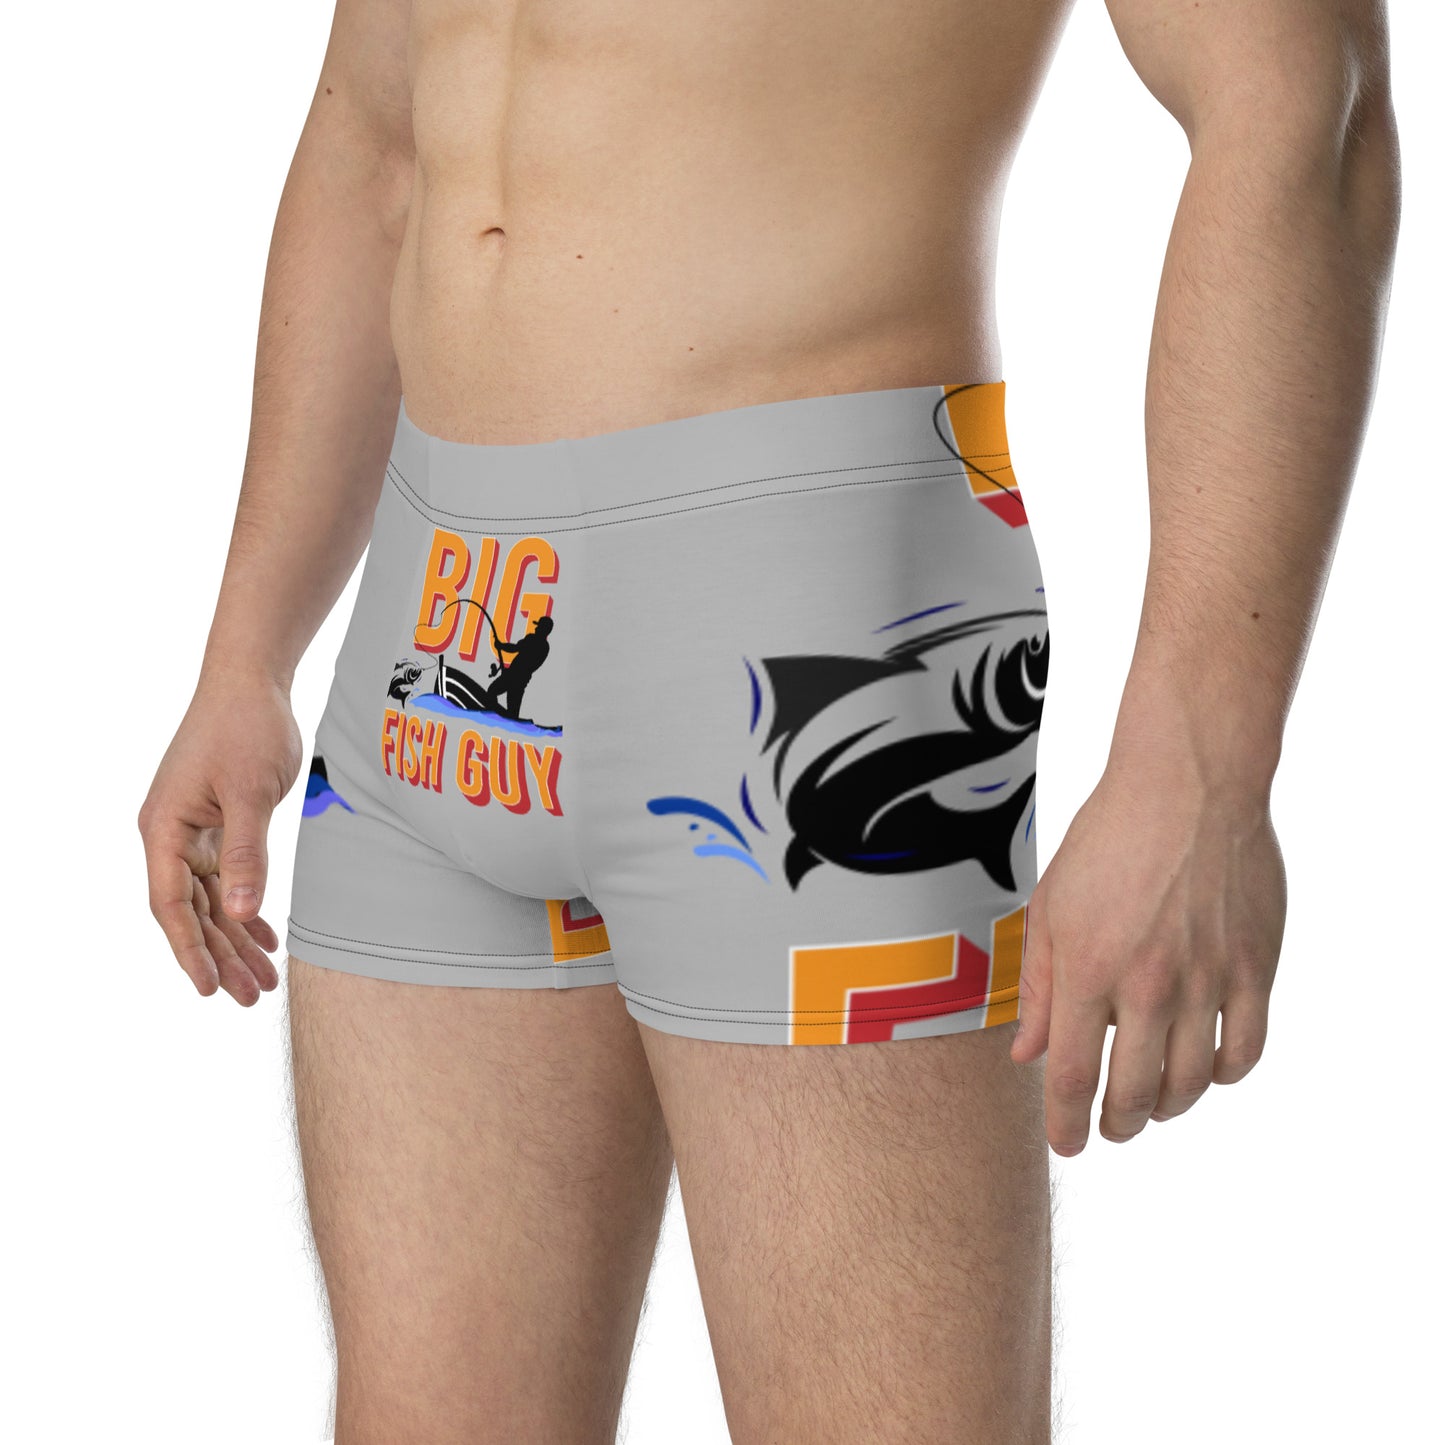 Big Fish Guy® Underwear Boxer Briefs For Men